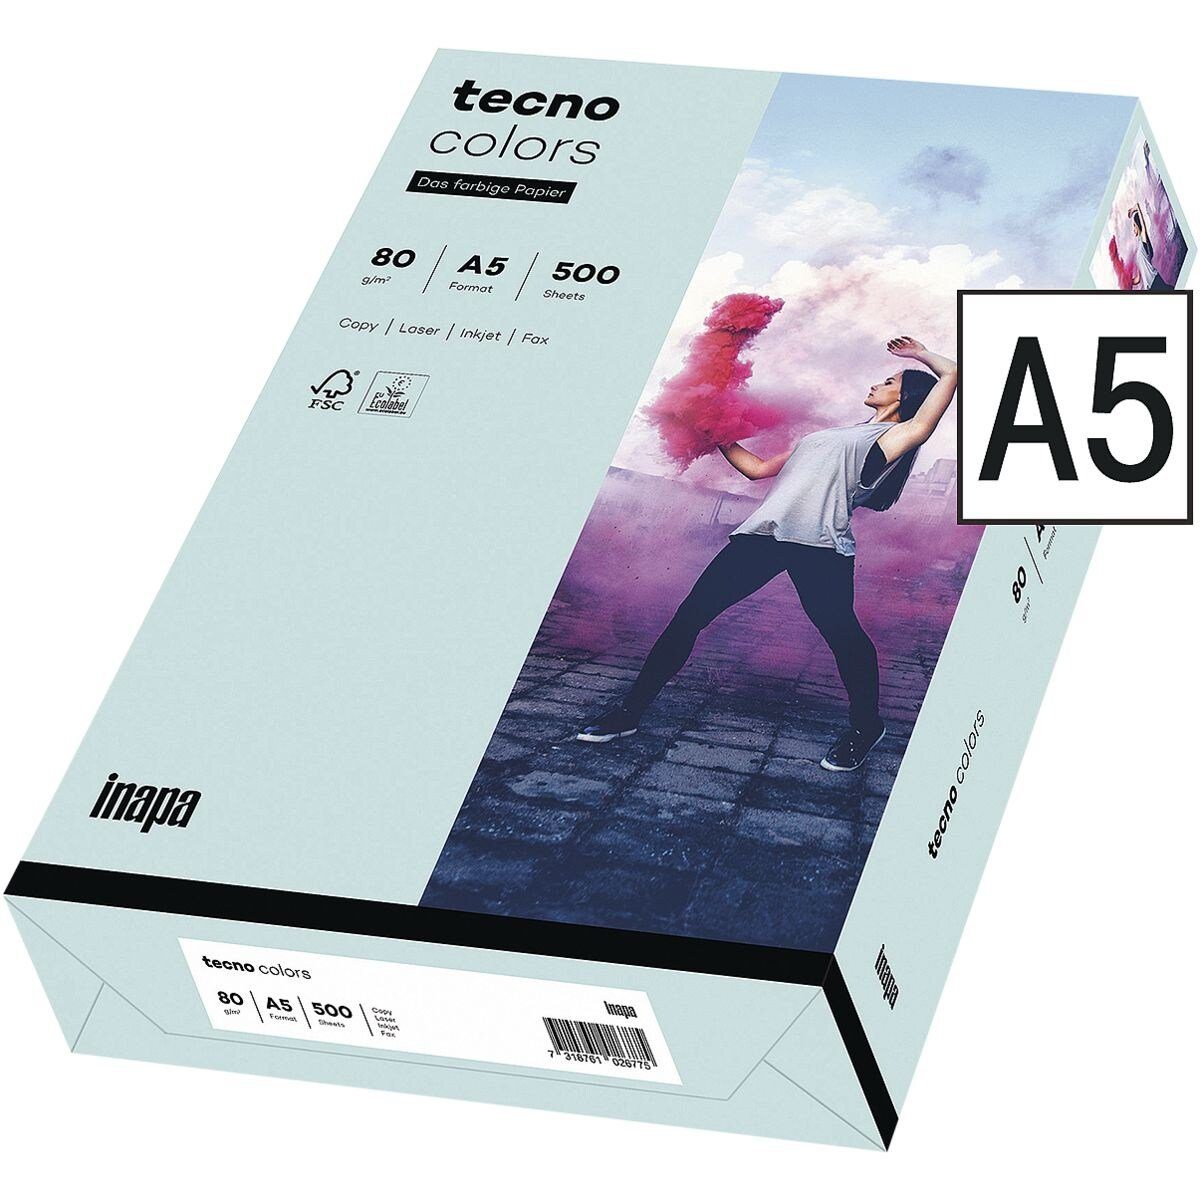 Inapa tecno Drucker- und Kopierpapier Rainbow, Pastellfarben, Format DIN A5, 80 g/m² hellblau